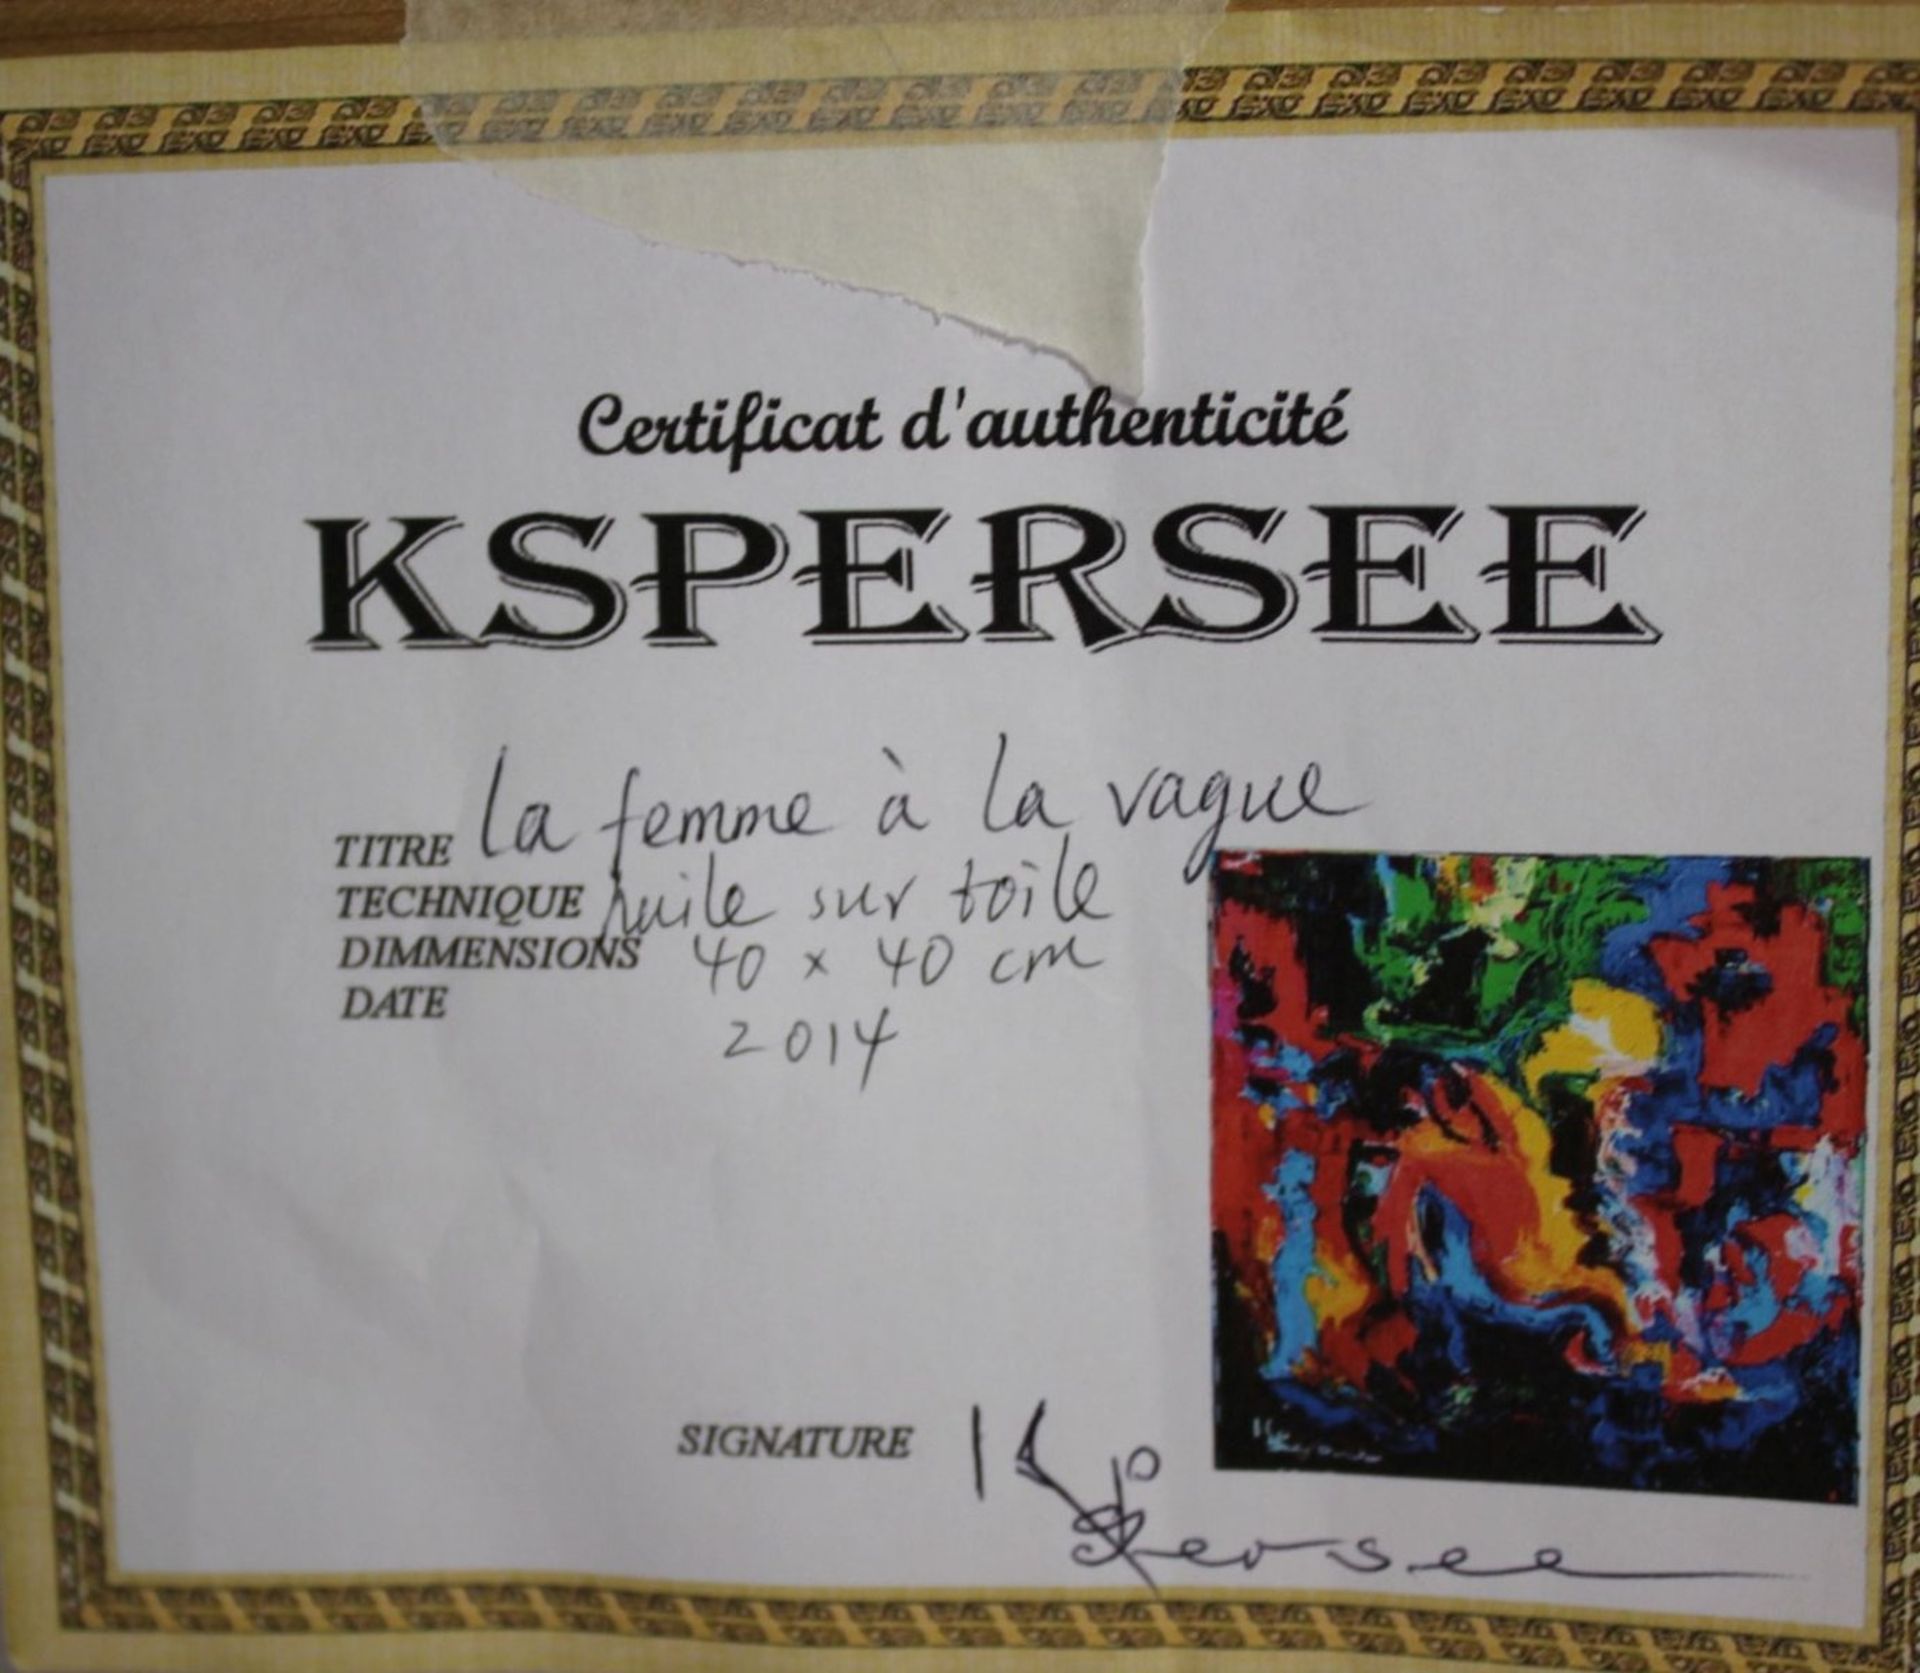 Kspersee (1978), La femme á la vague, 2014, Öl/Leinwand, ungerahmt, 40 x 40cm. - Image 5 of 5